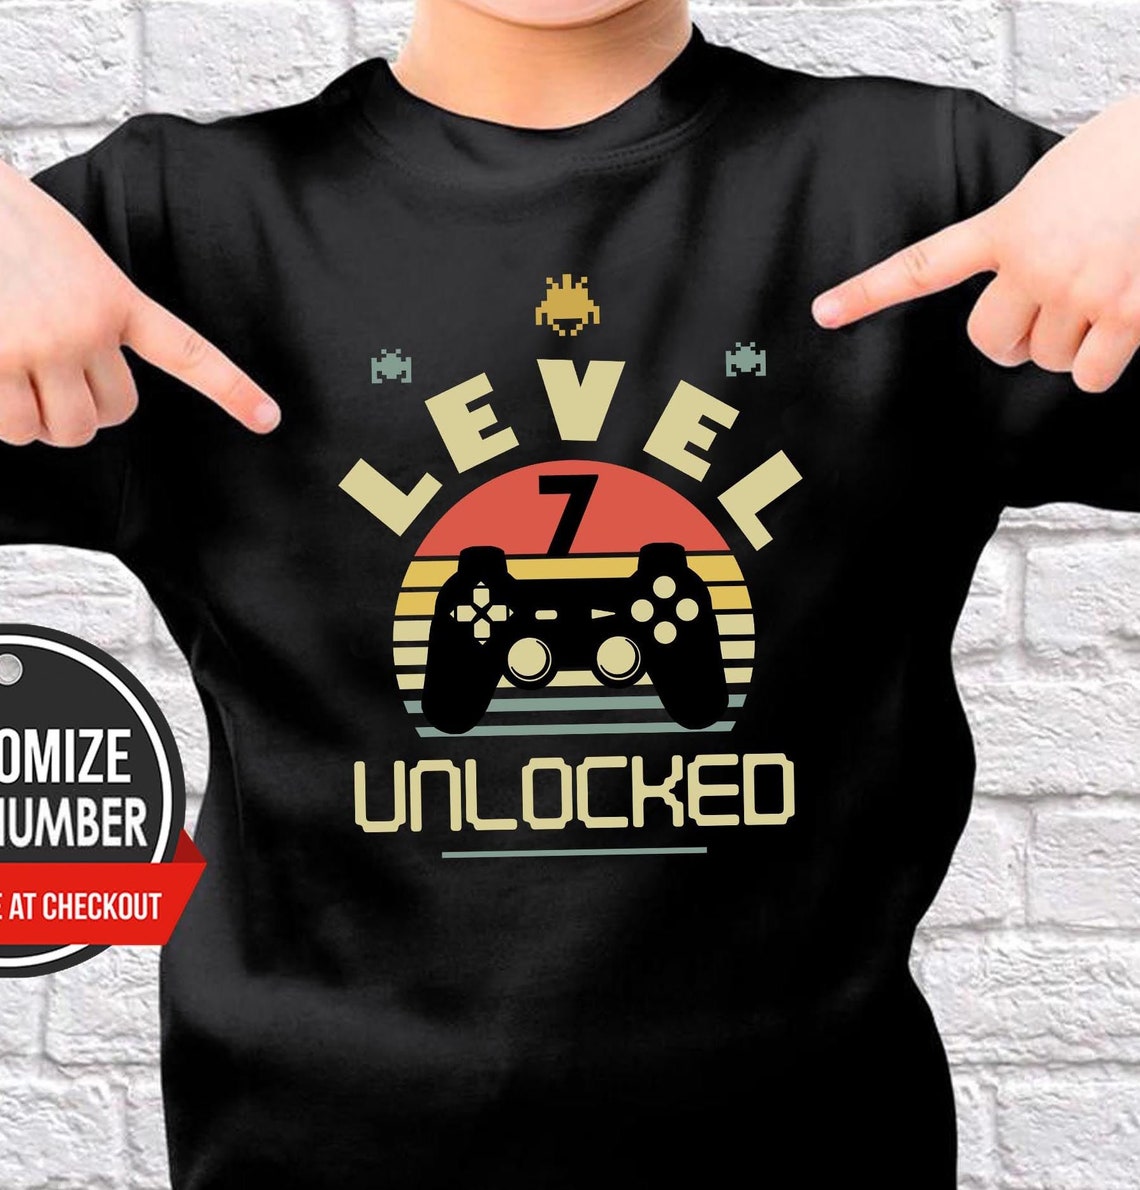 Level 7 Unlocked, Birthday Gift, Birthday T-Shirt